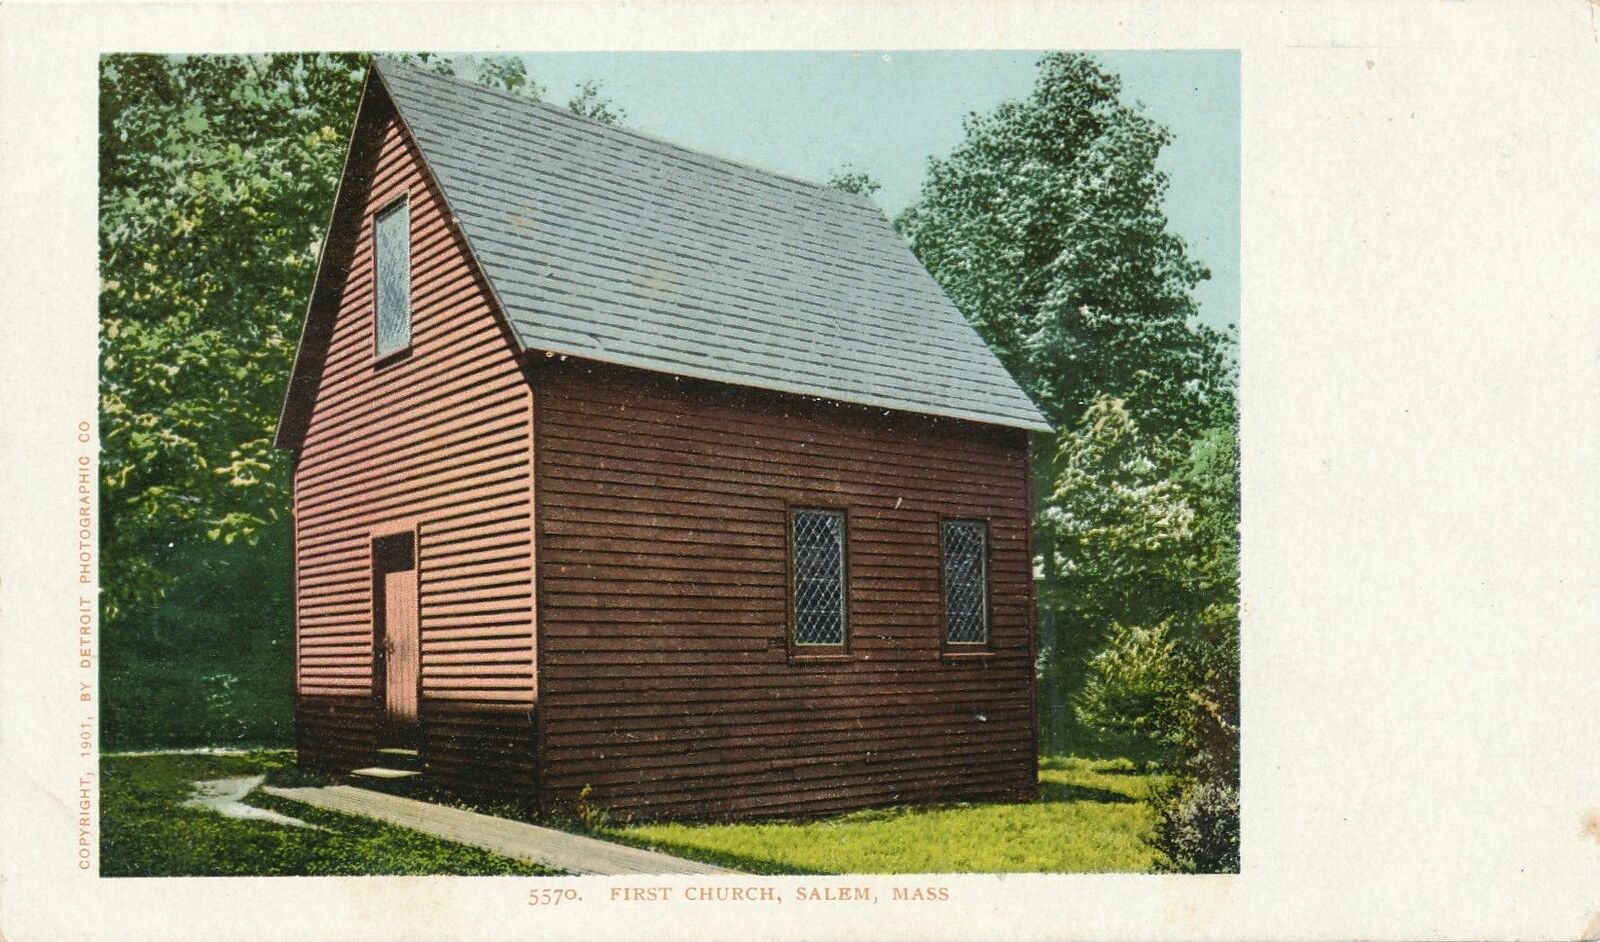 SALEM MA - First Church - udb (pre 1908)